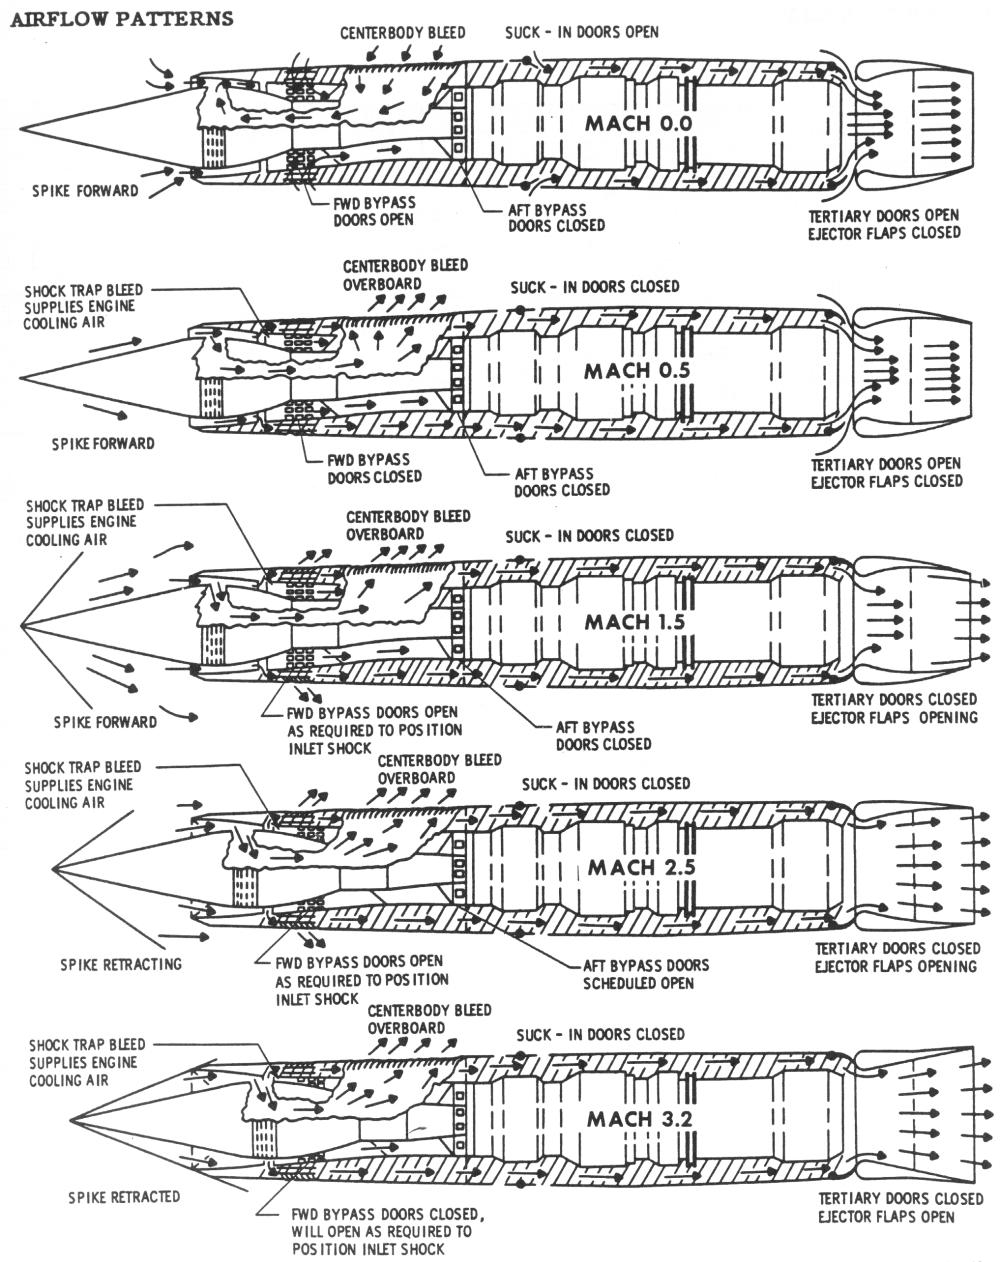 http://www.enginehistory.org/Misc/SR-71EngInst.jpg